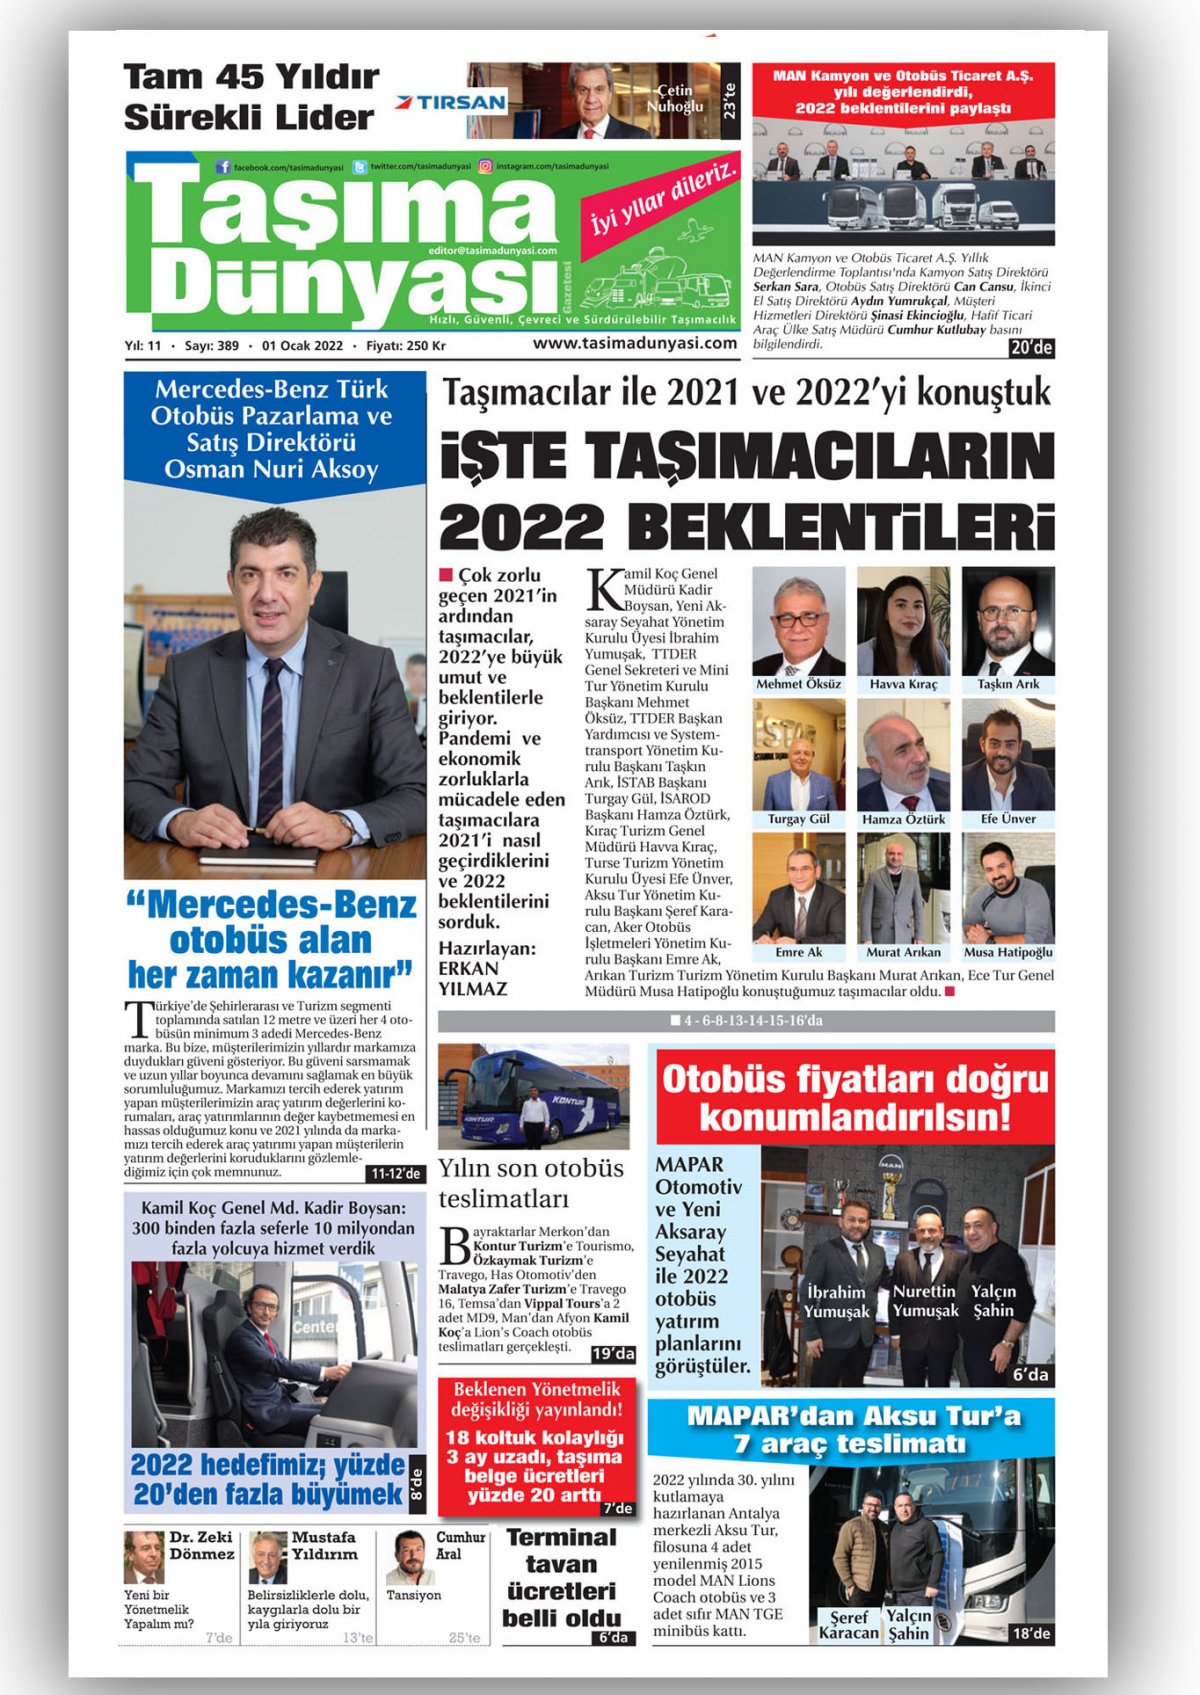 Taşıma Dünyası Gazetesi - 01.01.2022 Manşeti